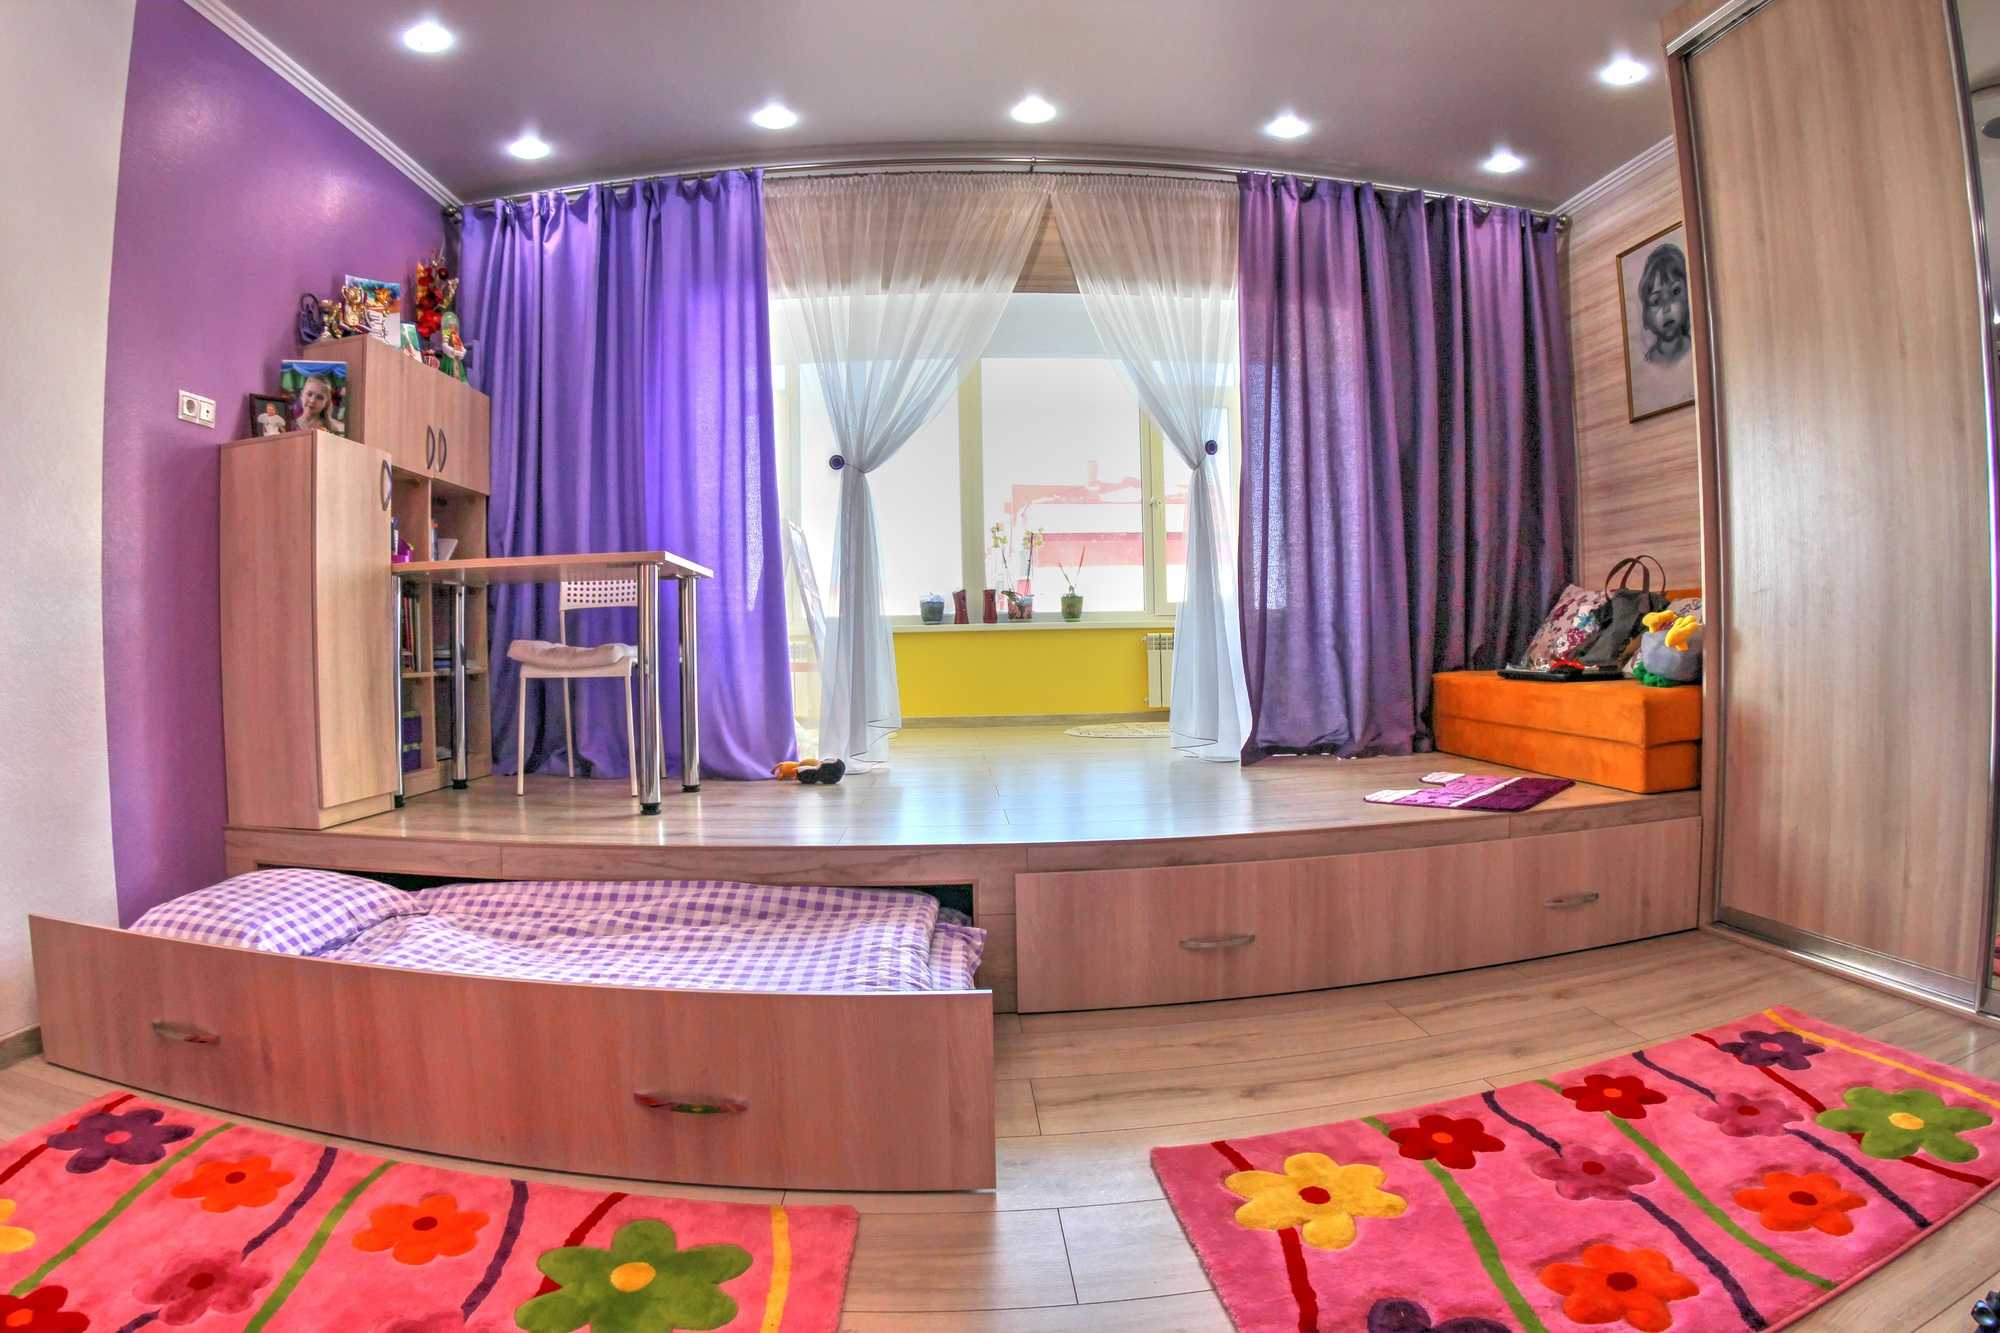 Детские комнаты для двух девочек | 78 фото дизайна детской